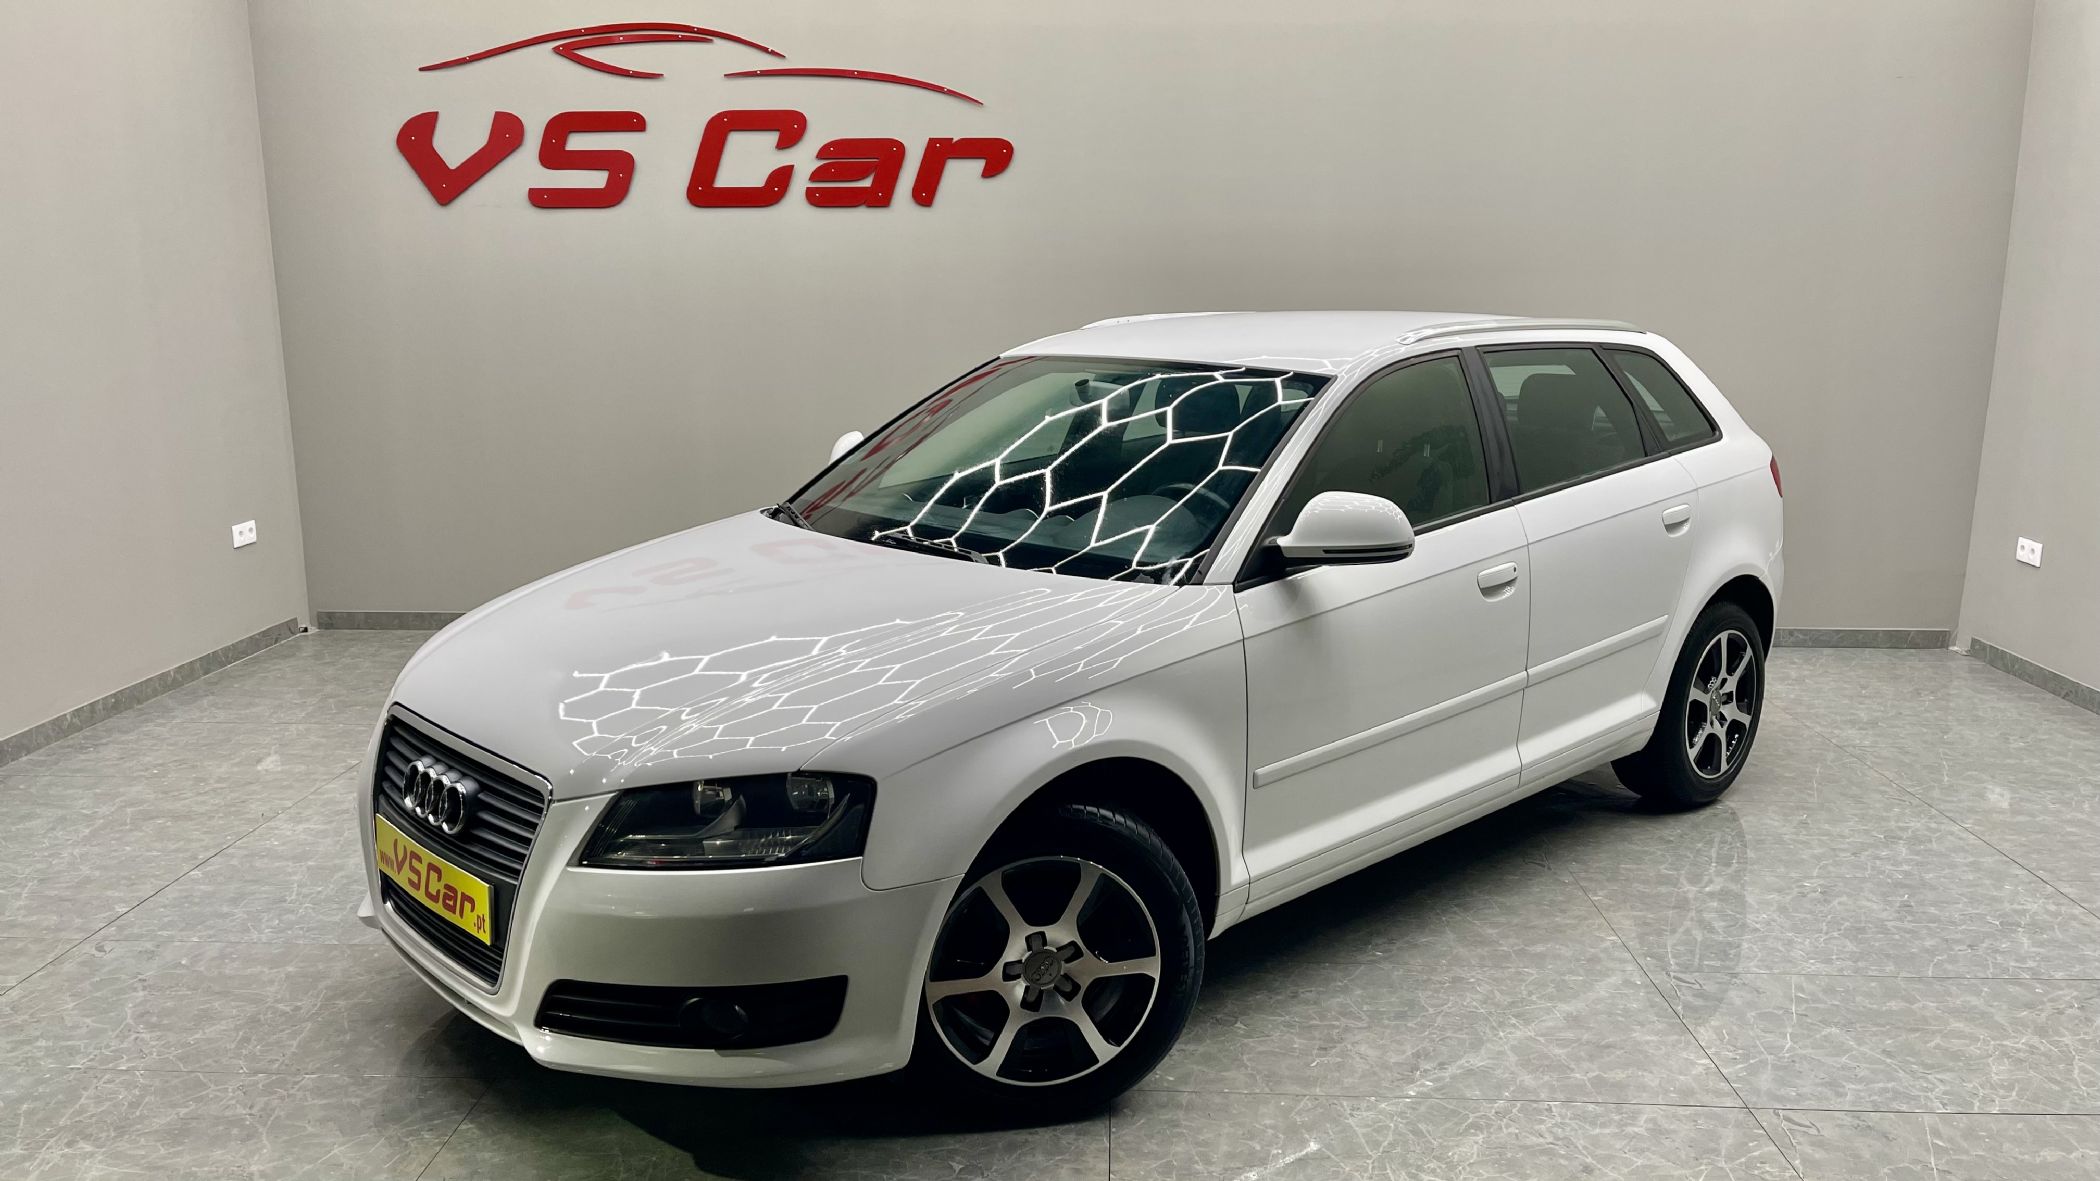 Vendido Audi A3 Sportback 1.6 TDI Des. - Carros usados para venda